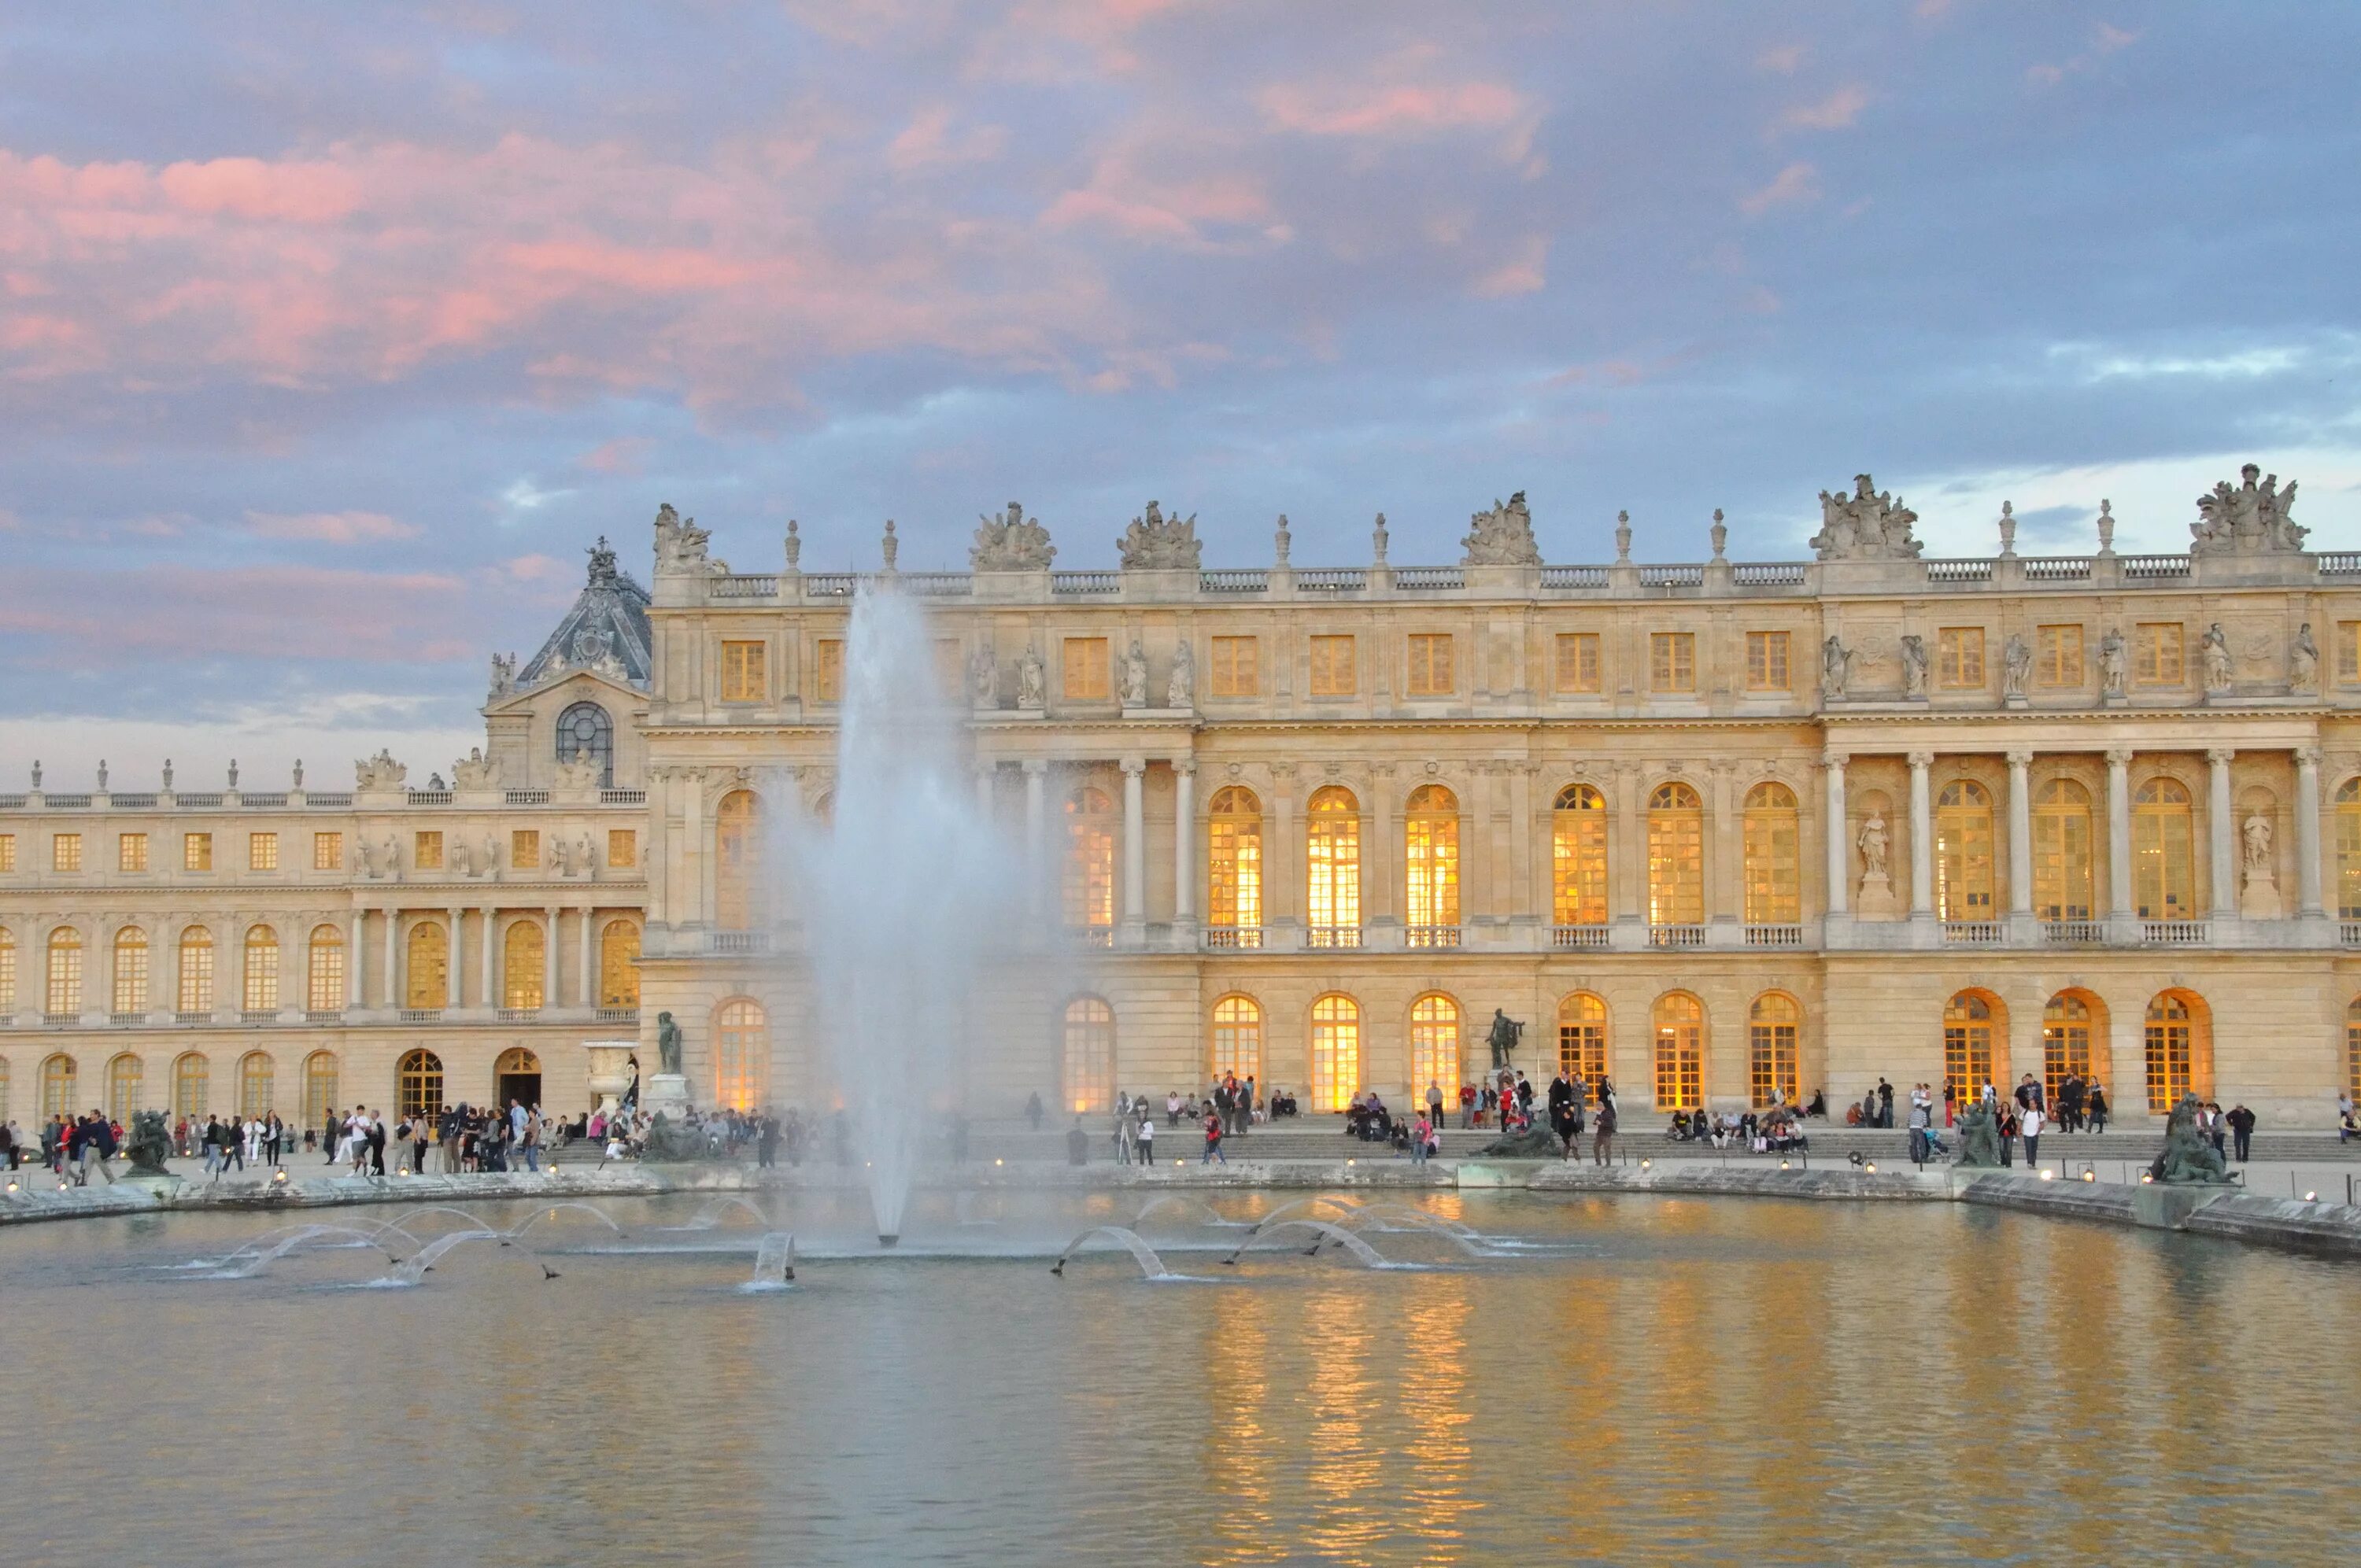 Королевский версаль. Версальский дворец дворцы Франции. Королевский двор Версальского дворца. Версальский дворец Версаль классицизм. Замок Версаль Франция.